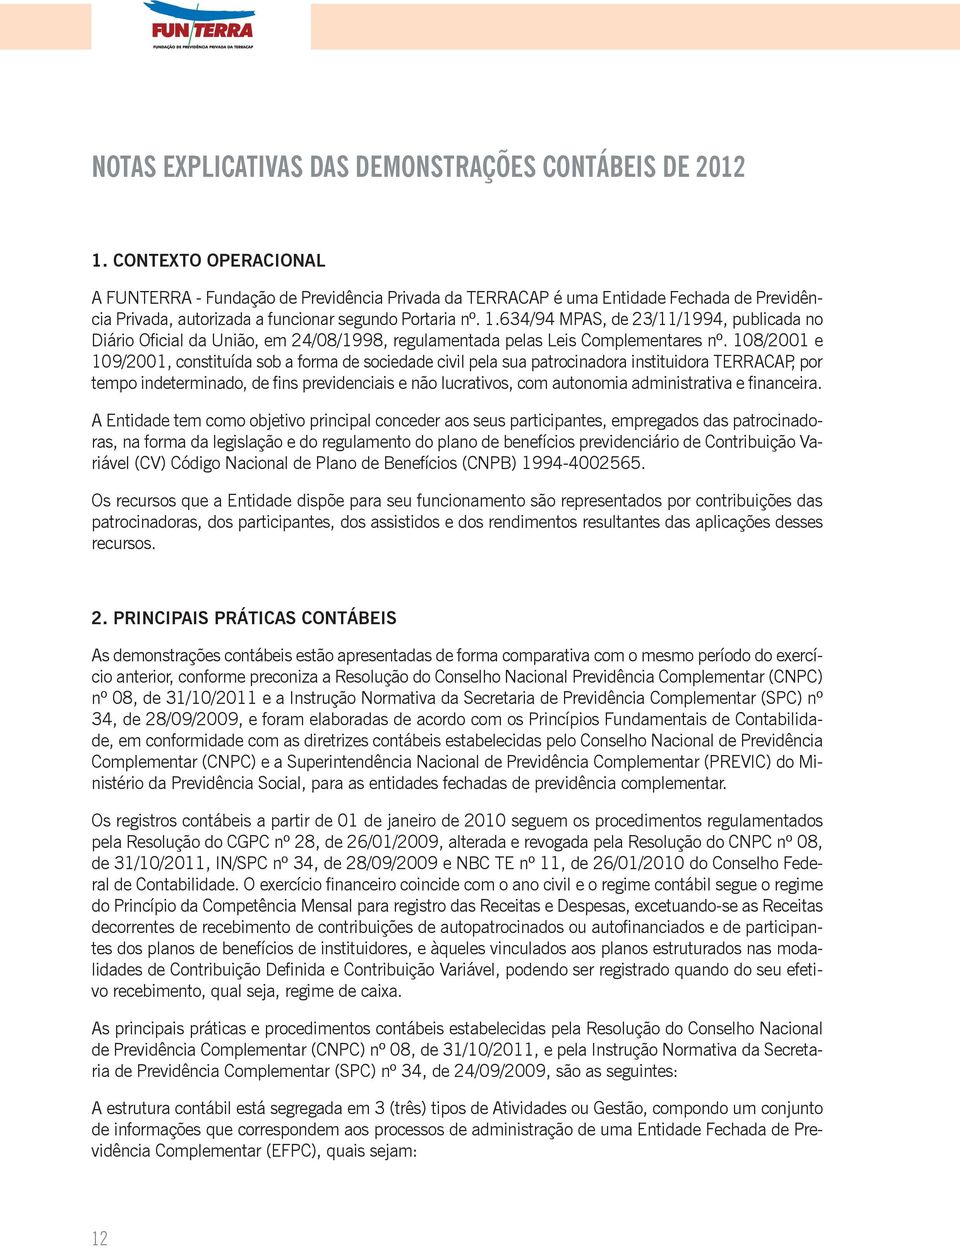 634/94 MPAS, de 23/11/1994, publicada no Diário Oficial da União, em 24/08/1998, regulamentada pelas Leis Complementares nº.